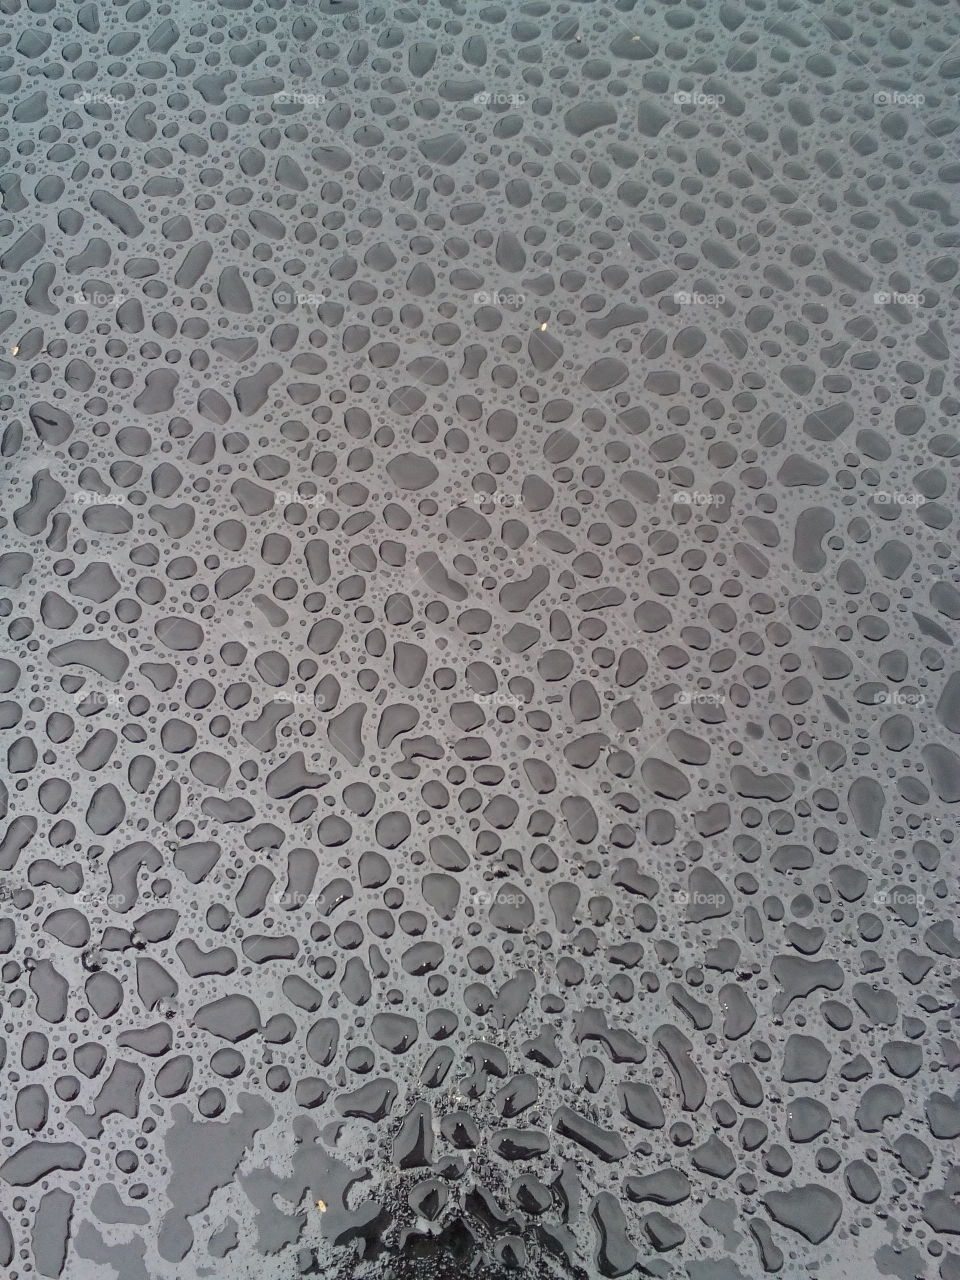 Bitumen droplets